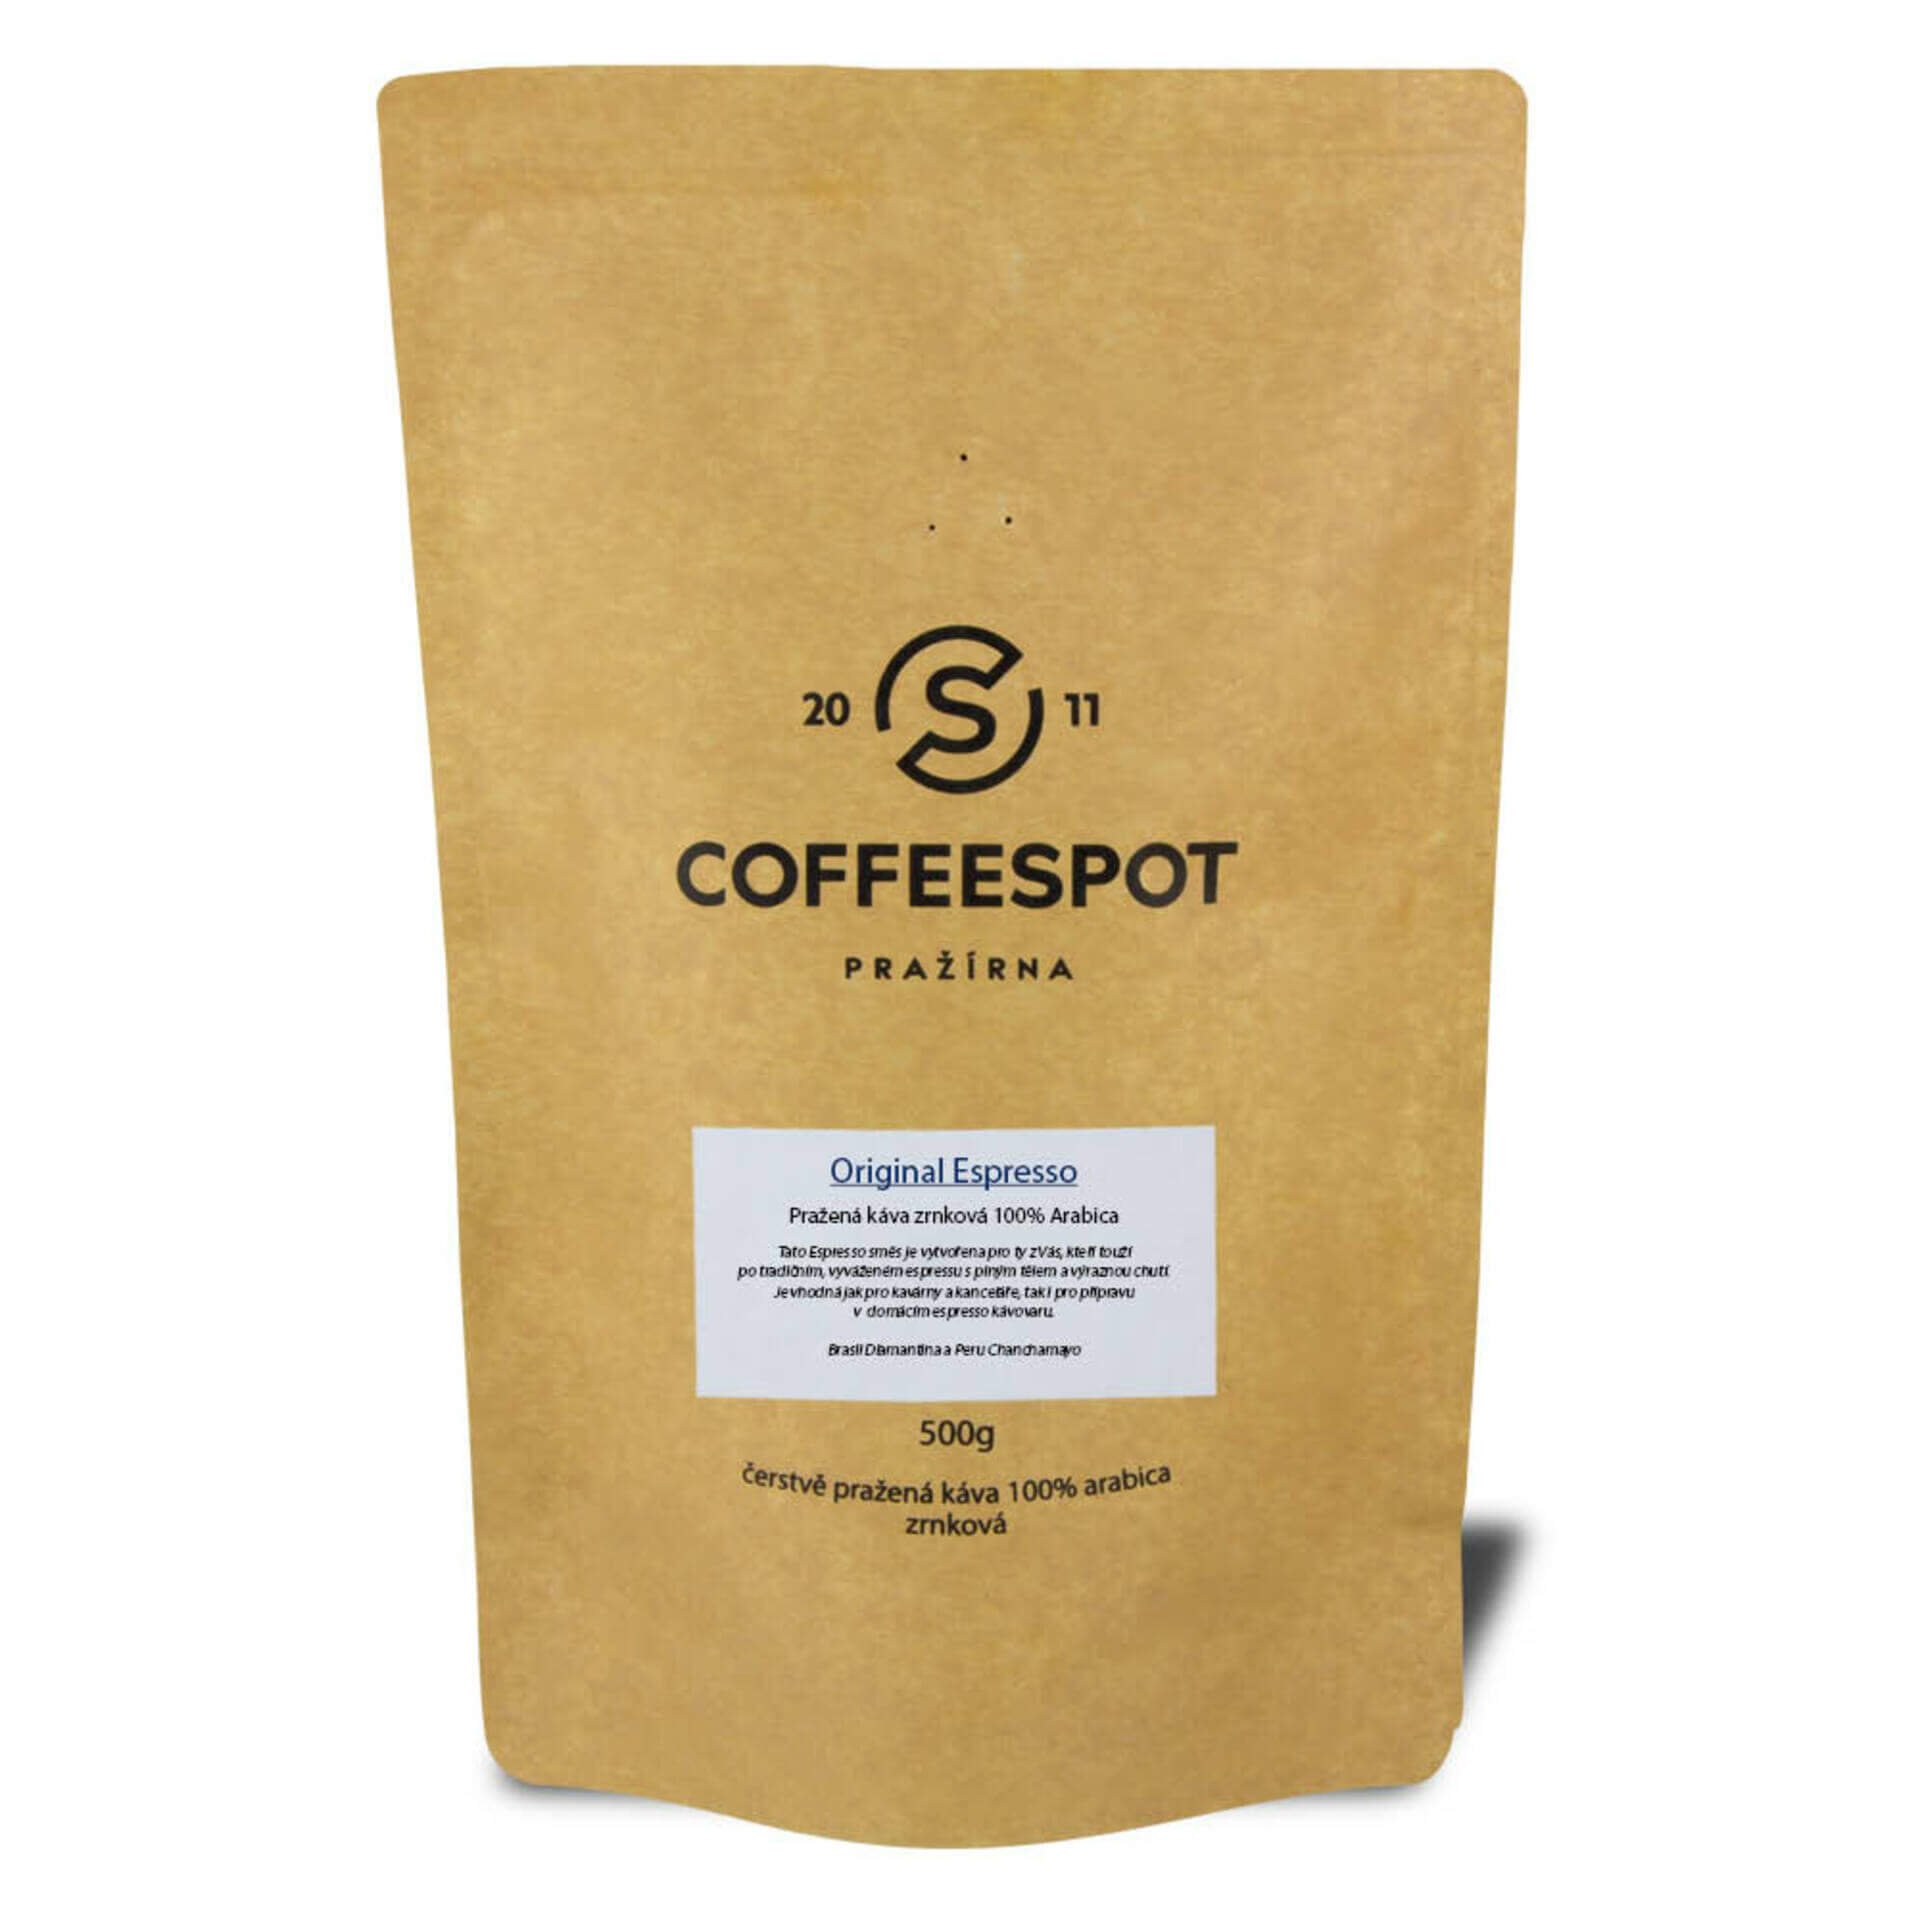 Coffeespot Original Espresso 500g